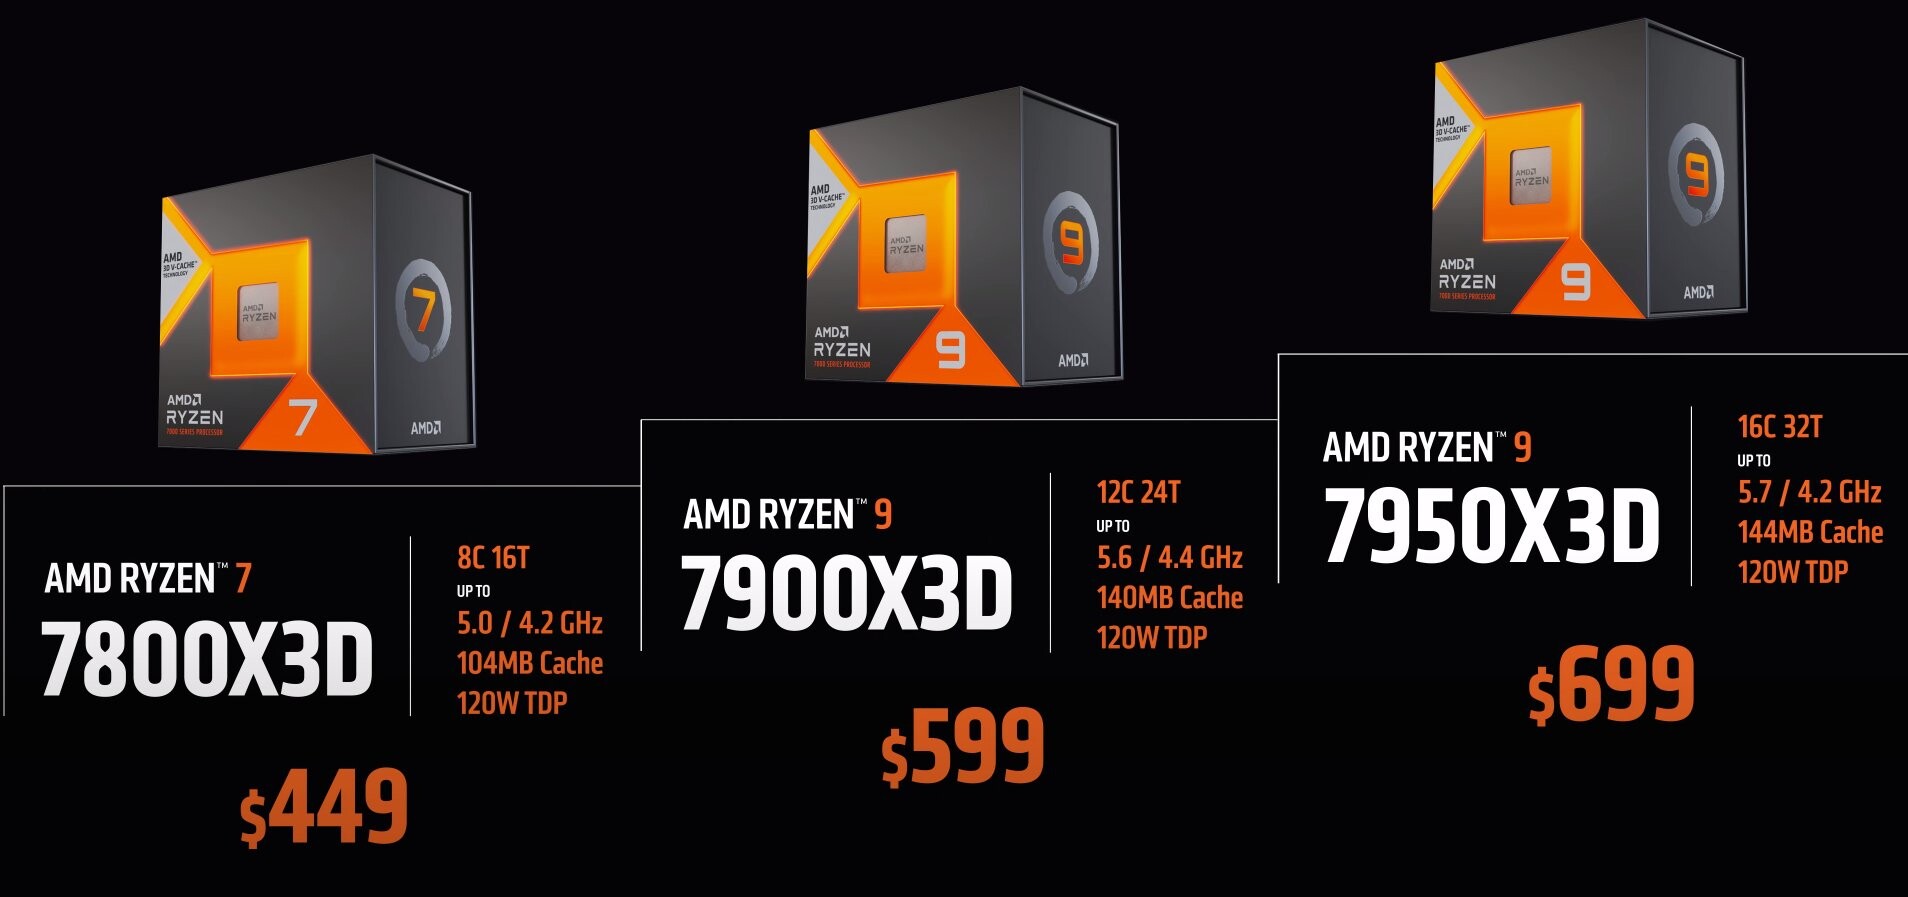 AMD Ryzen 7 7800X3D overclocked to impressive 5.4GHz